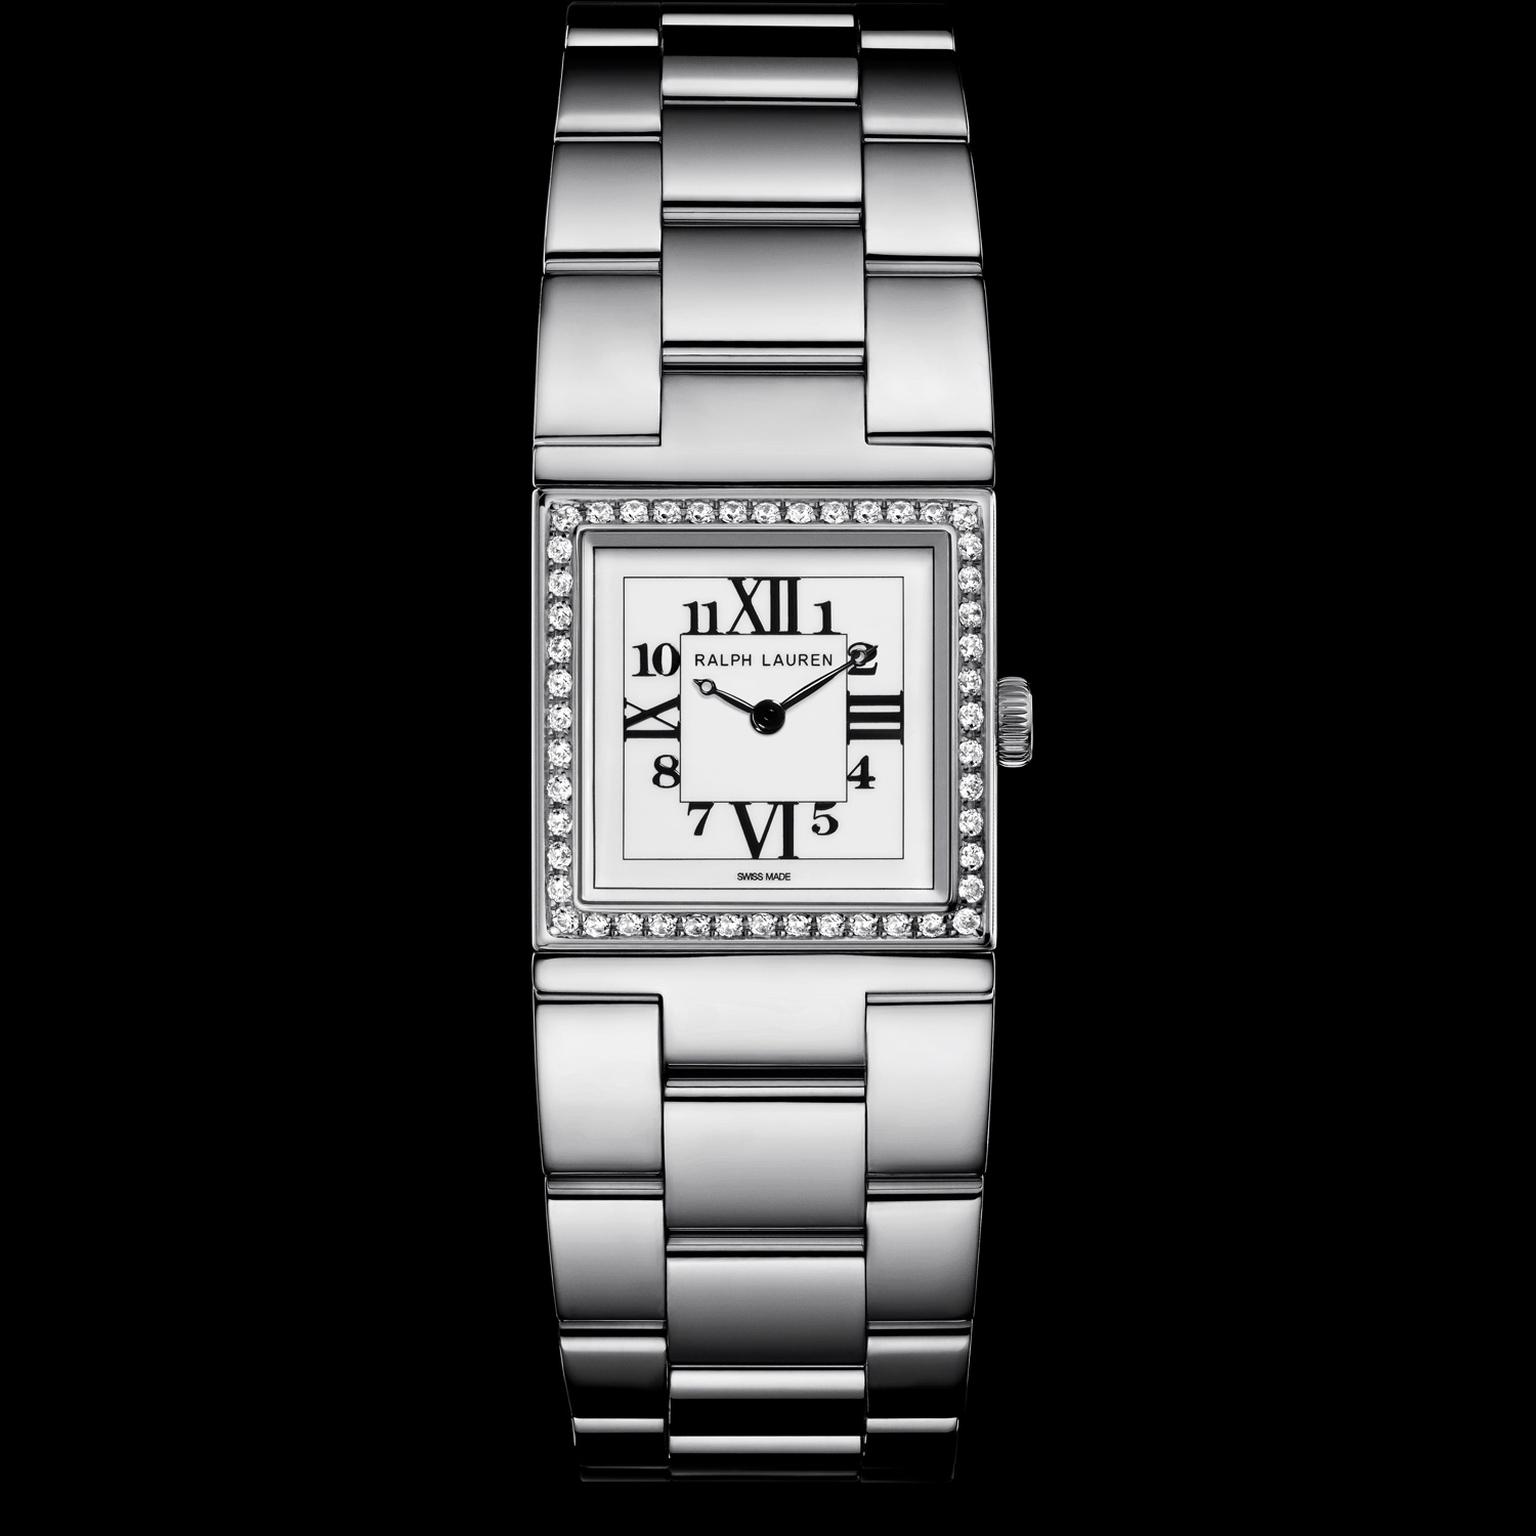 Ralph Lauren petite steel 867 watch